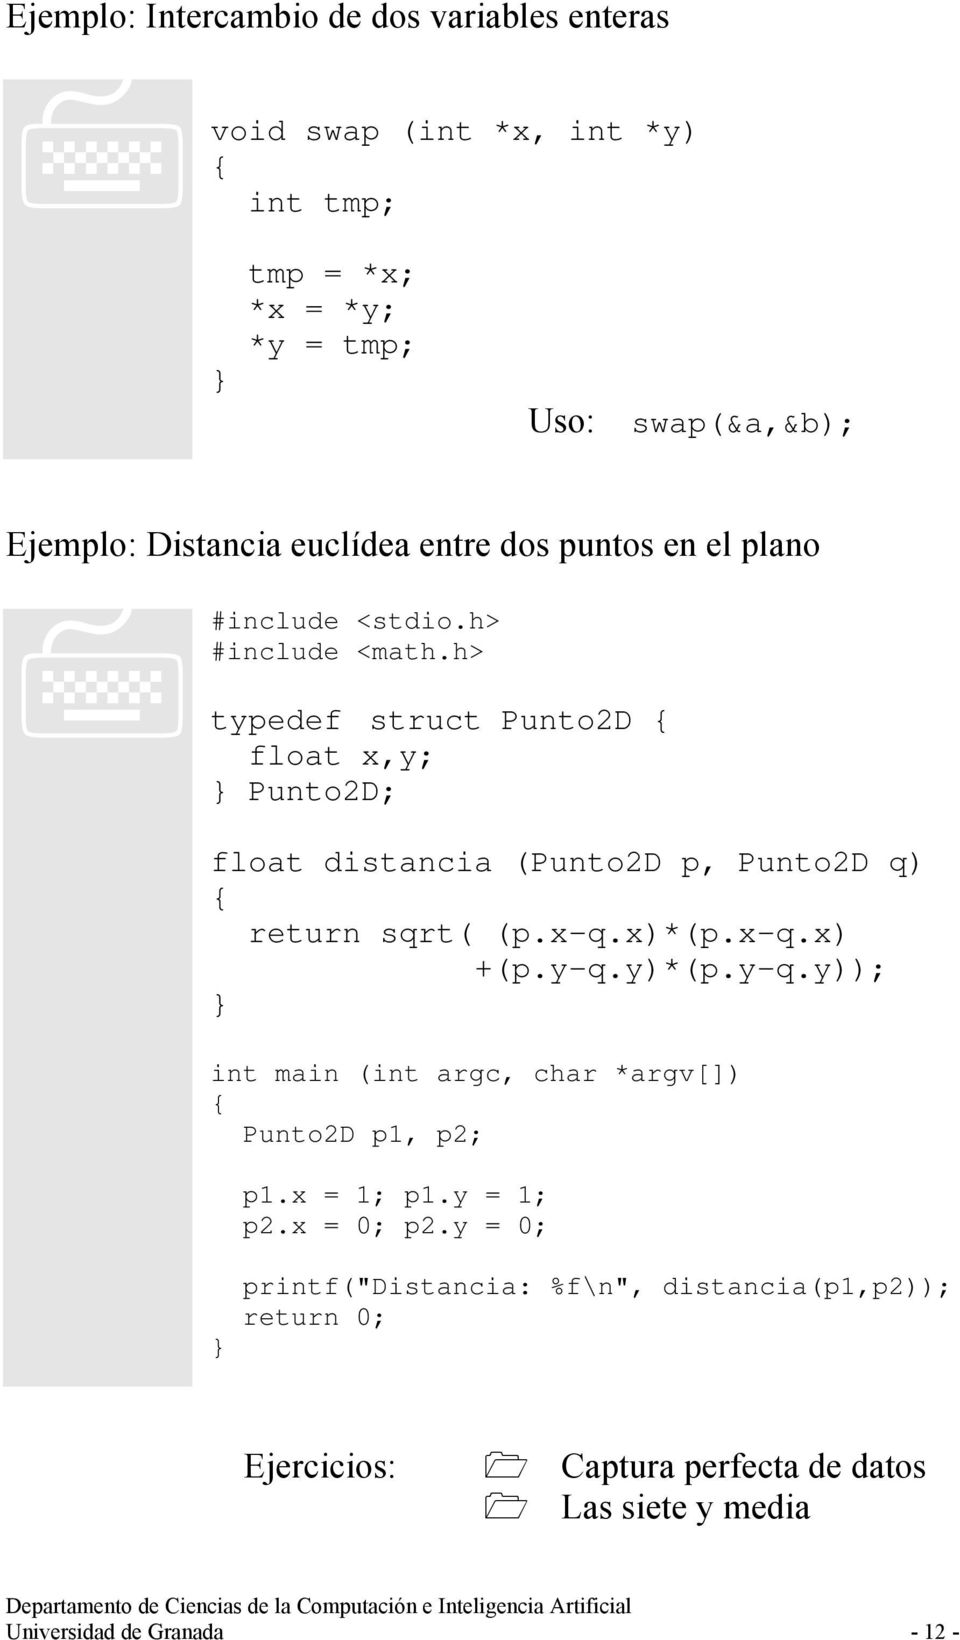 h> typedef struct Punto2D float x,y; Punto2D; float distancia (Punto2D p, Punto2D q) return sqrt( (p.x-q.x)*(p.x-q.x) +(p.y-q.